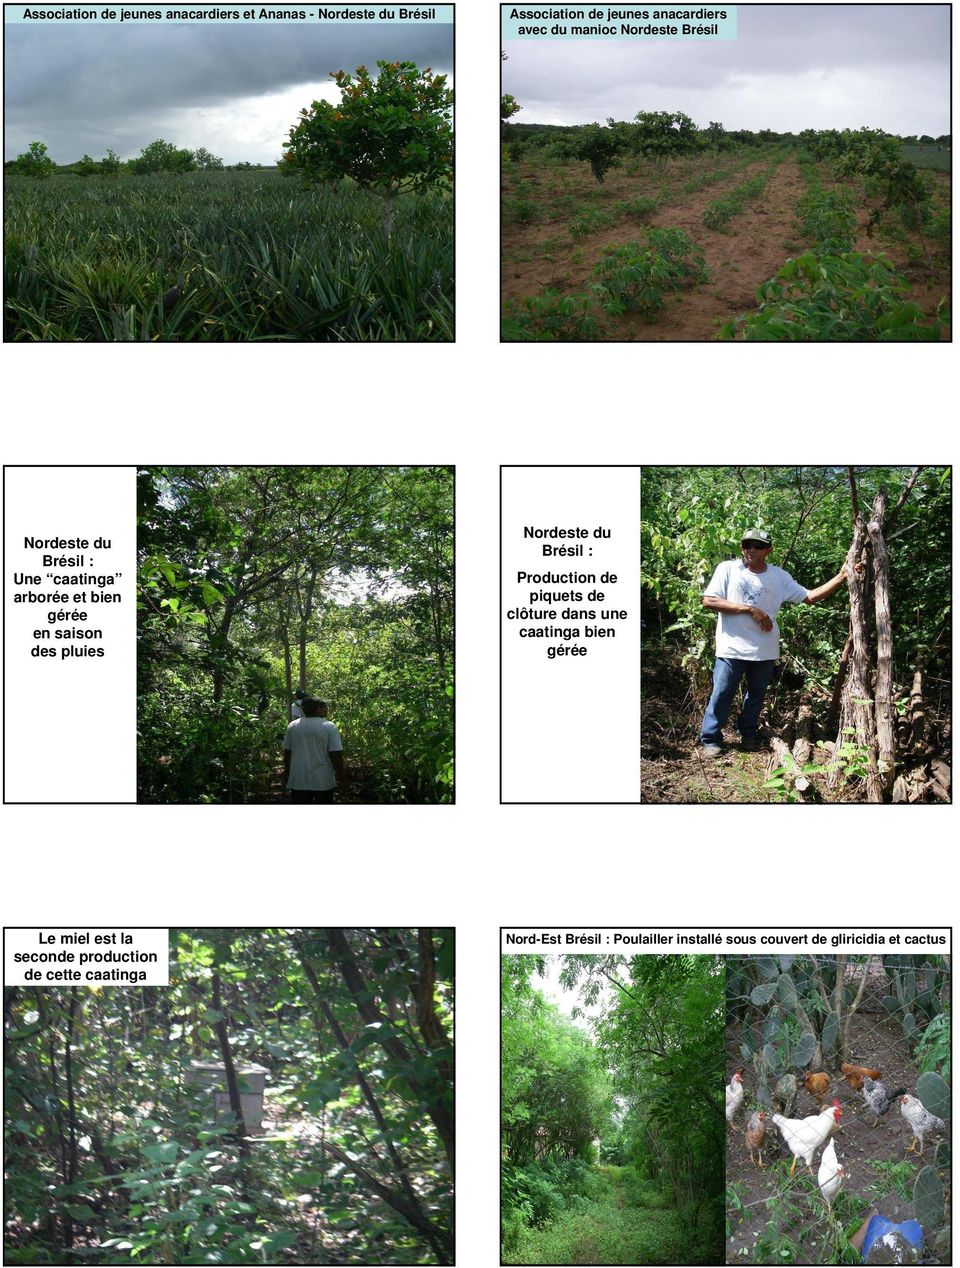 Association de jeunes anacardiers avec du manioc Nordeste Brésil Nordeste du Brésil : Production de